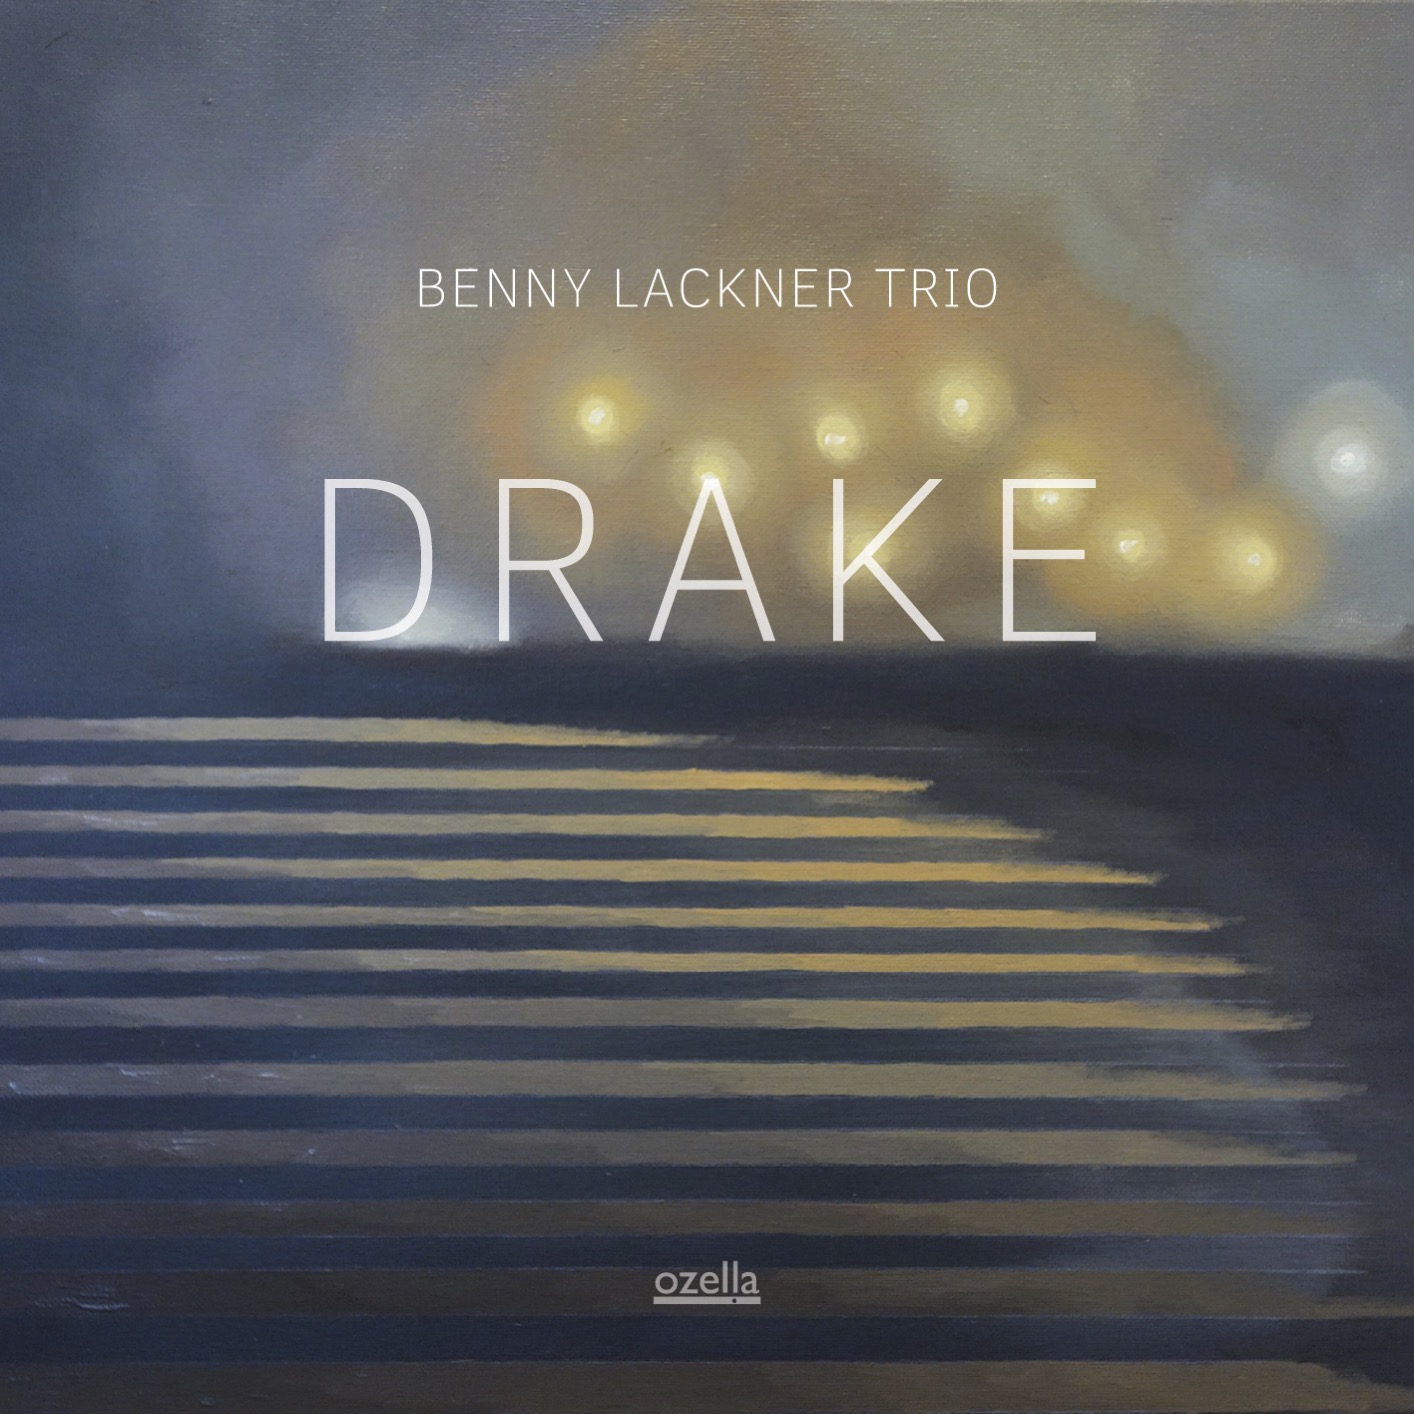 Benny Lackner Trio – Drake (2019) [FLAC 24bit/44,1kHz]